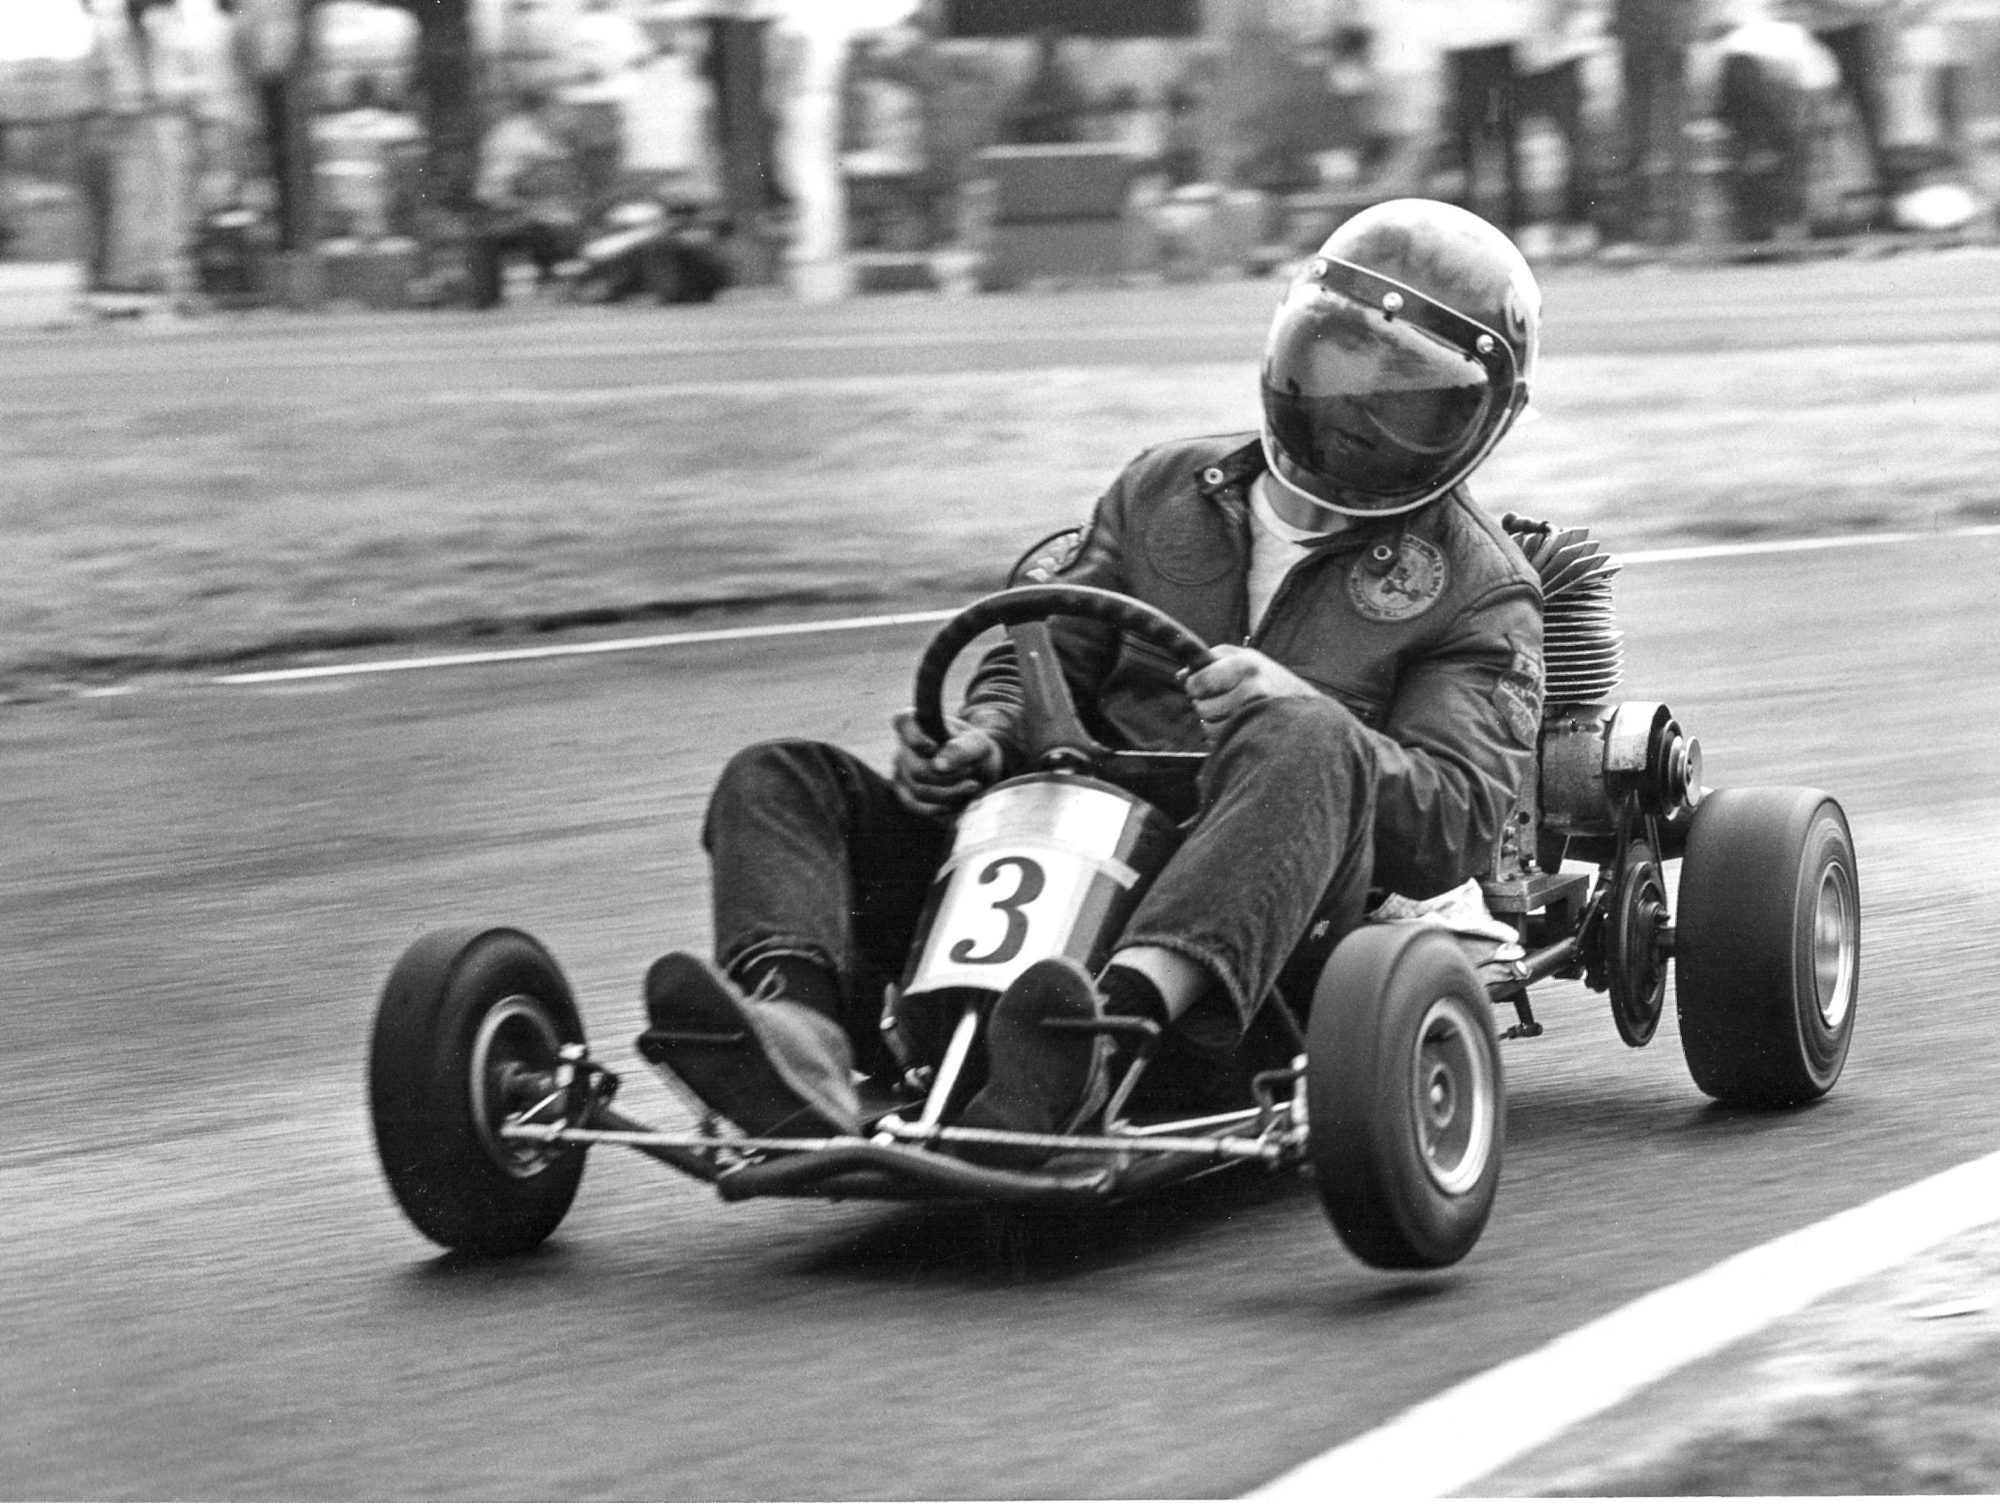 A kart in a race.